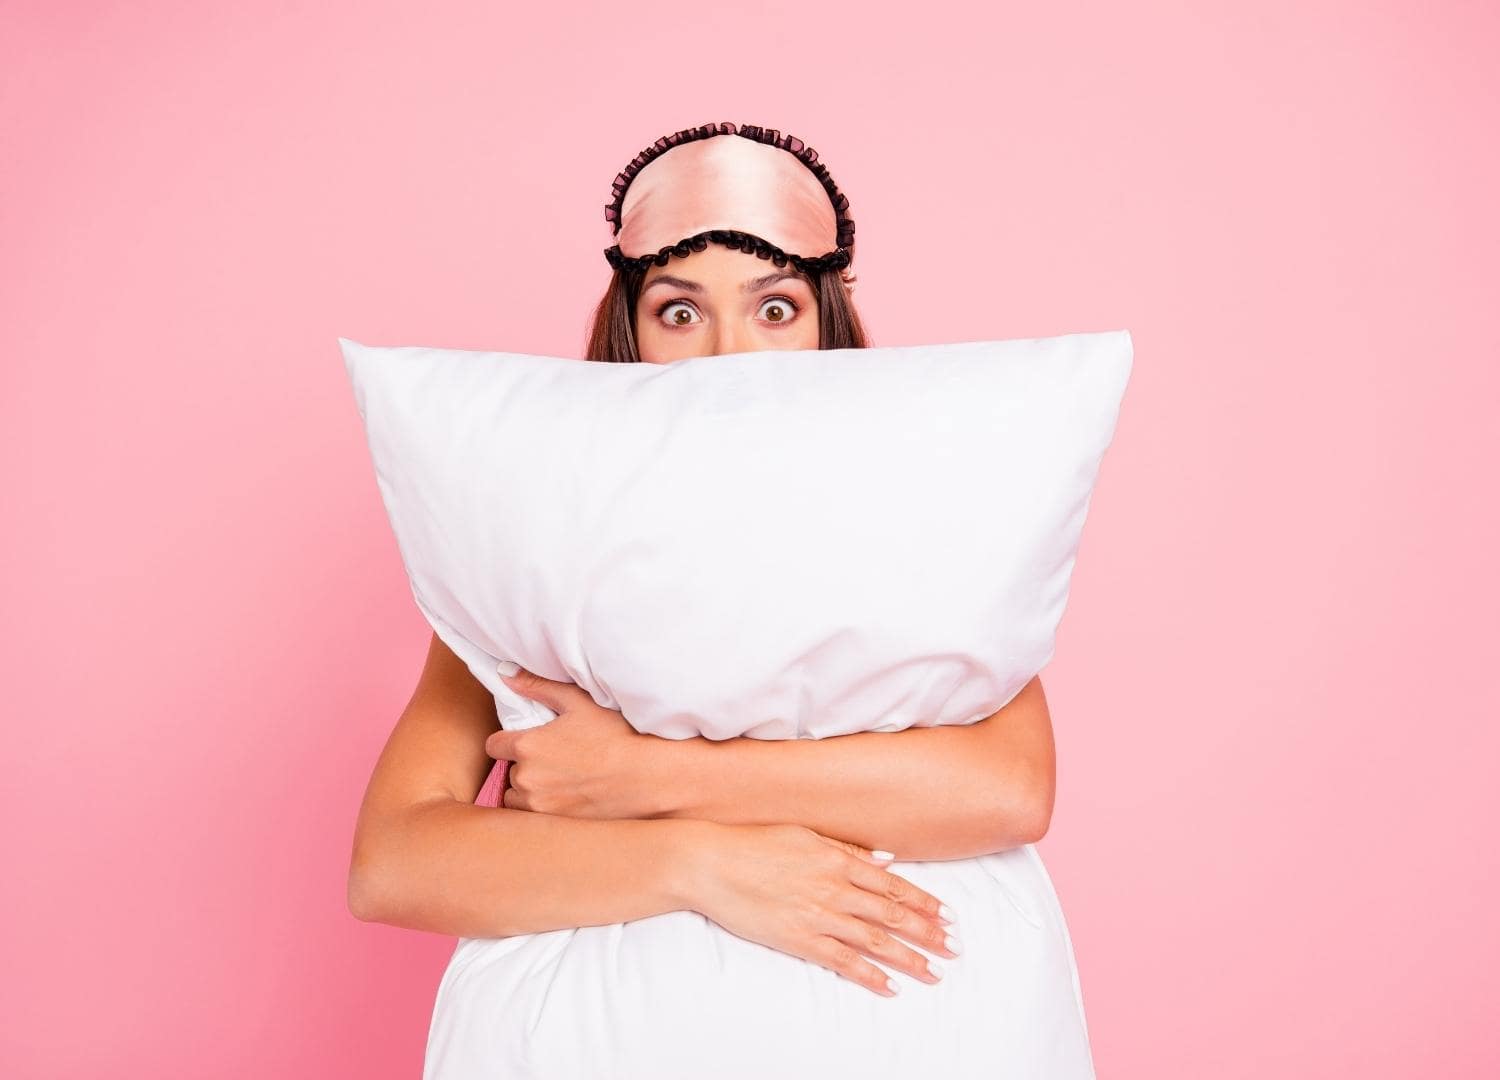 אישה מחבקת כרית, מאמר בלוג על שינה והקשר שלה לצוואר תפוס, כאבי ראש ממתח ומיגרנות